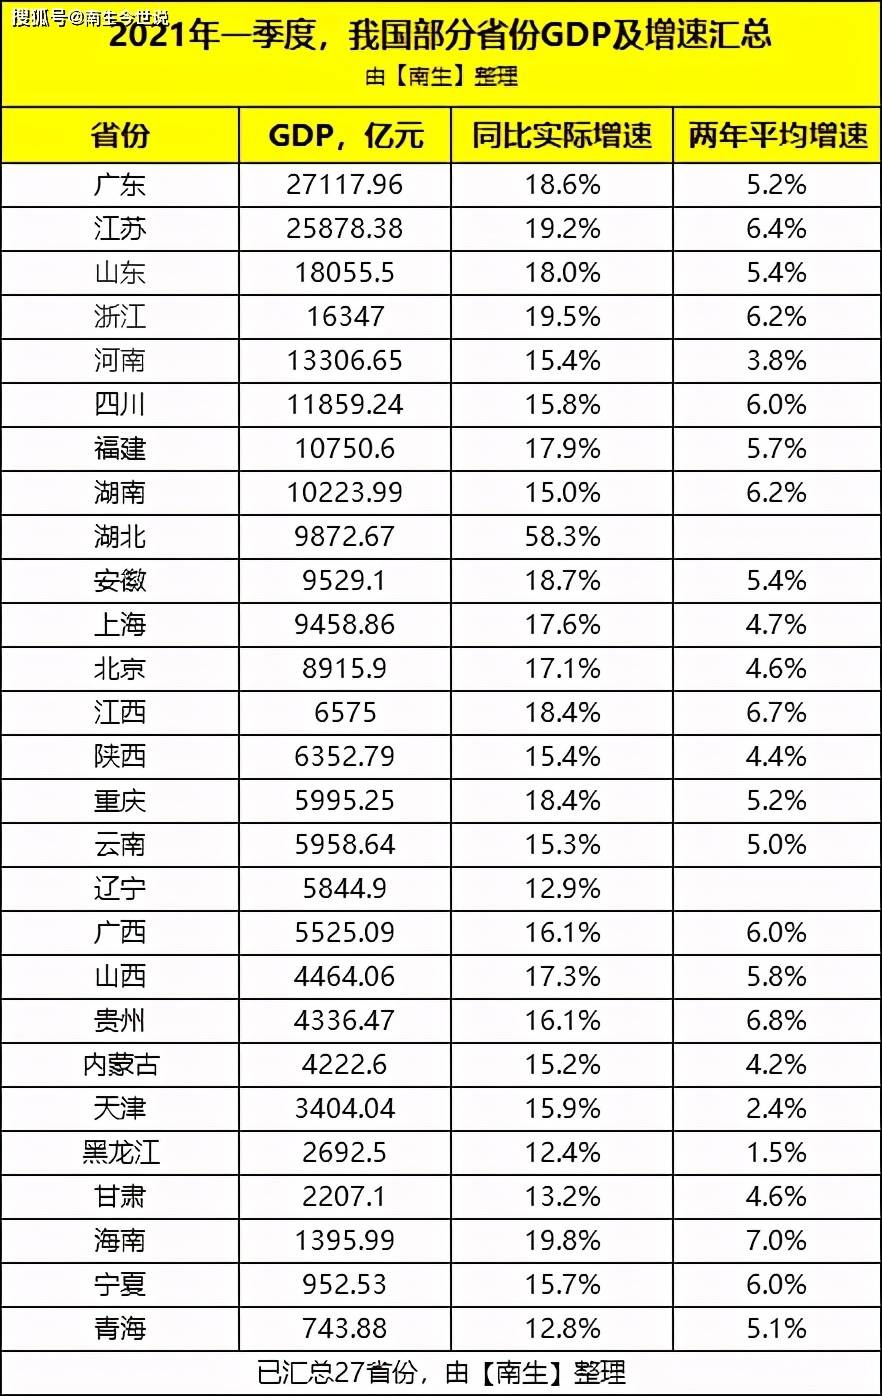 辽宁省gdp排名2021年_31省份一季度GDP排行,经济版图有新变化